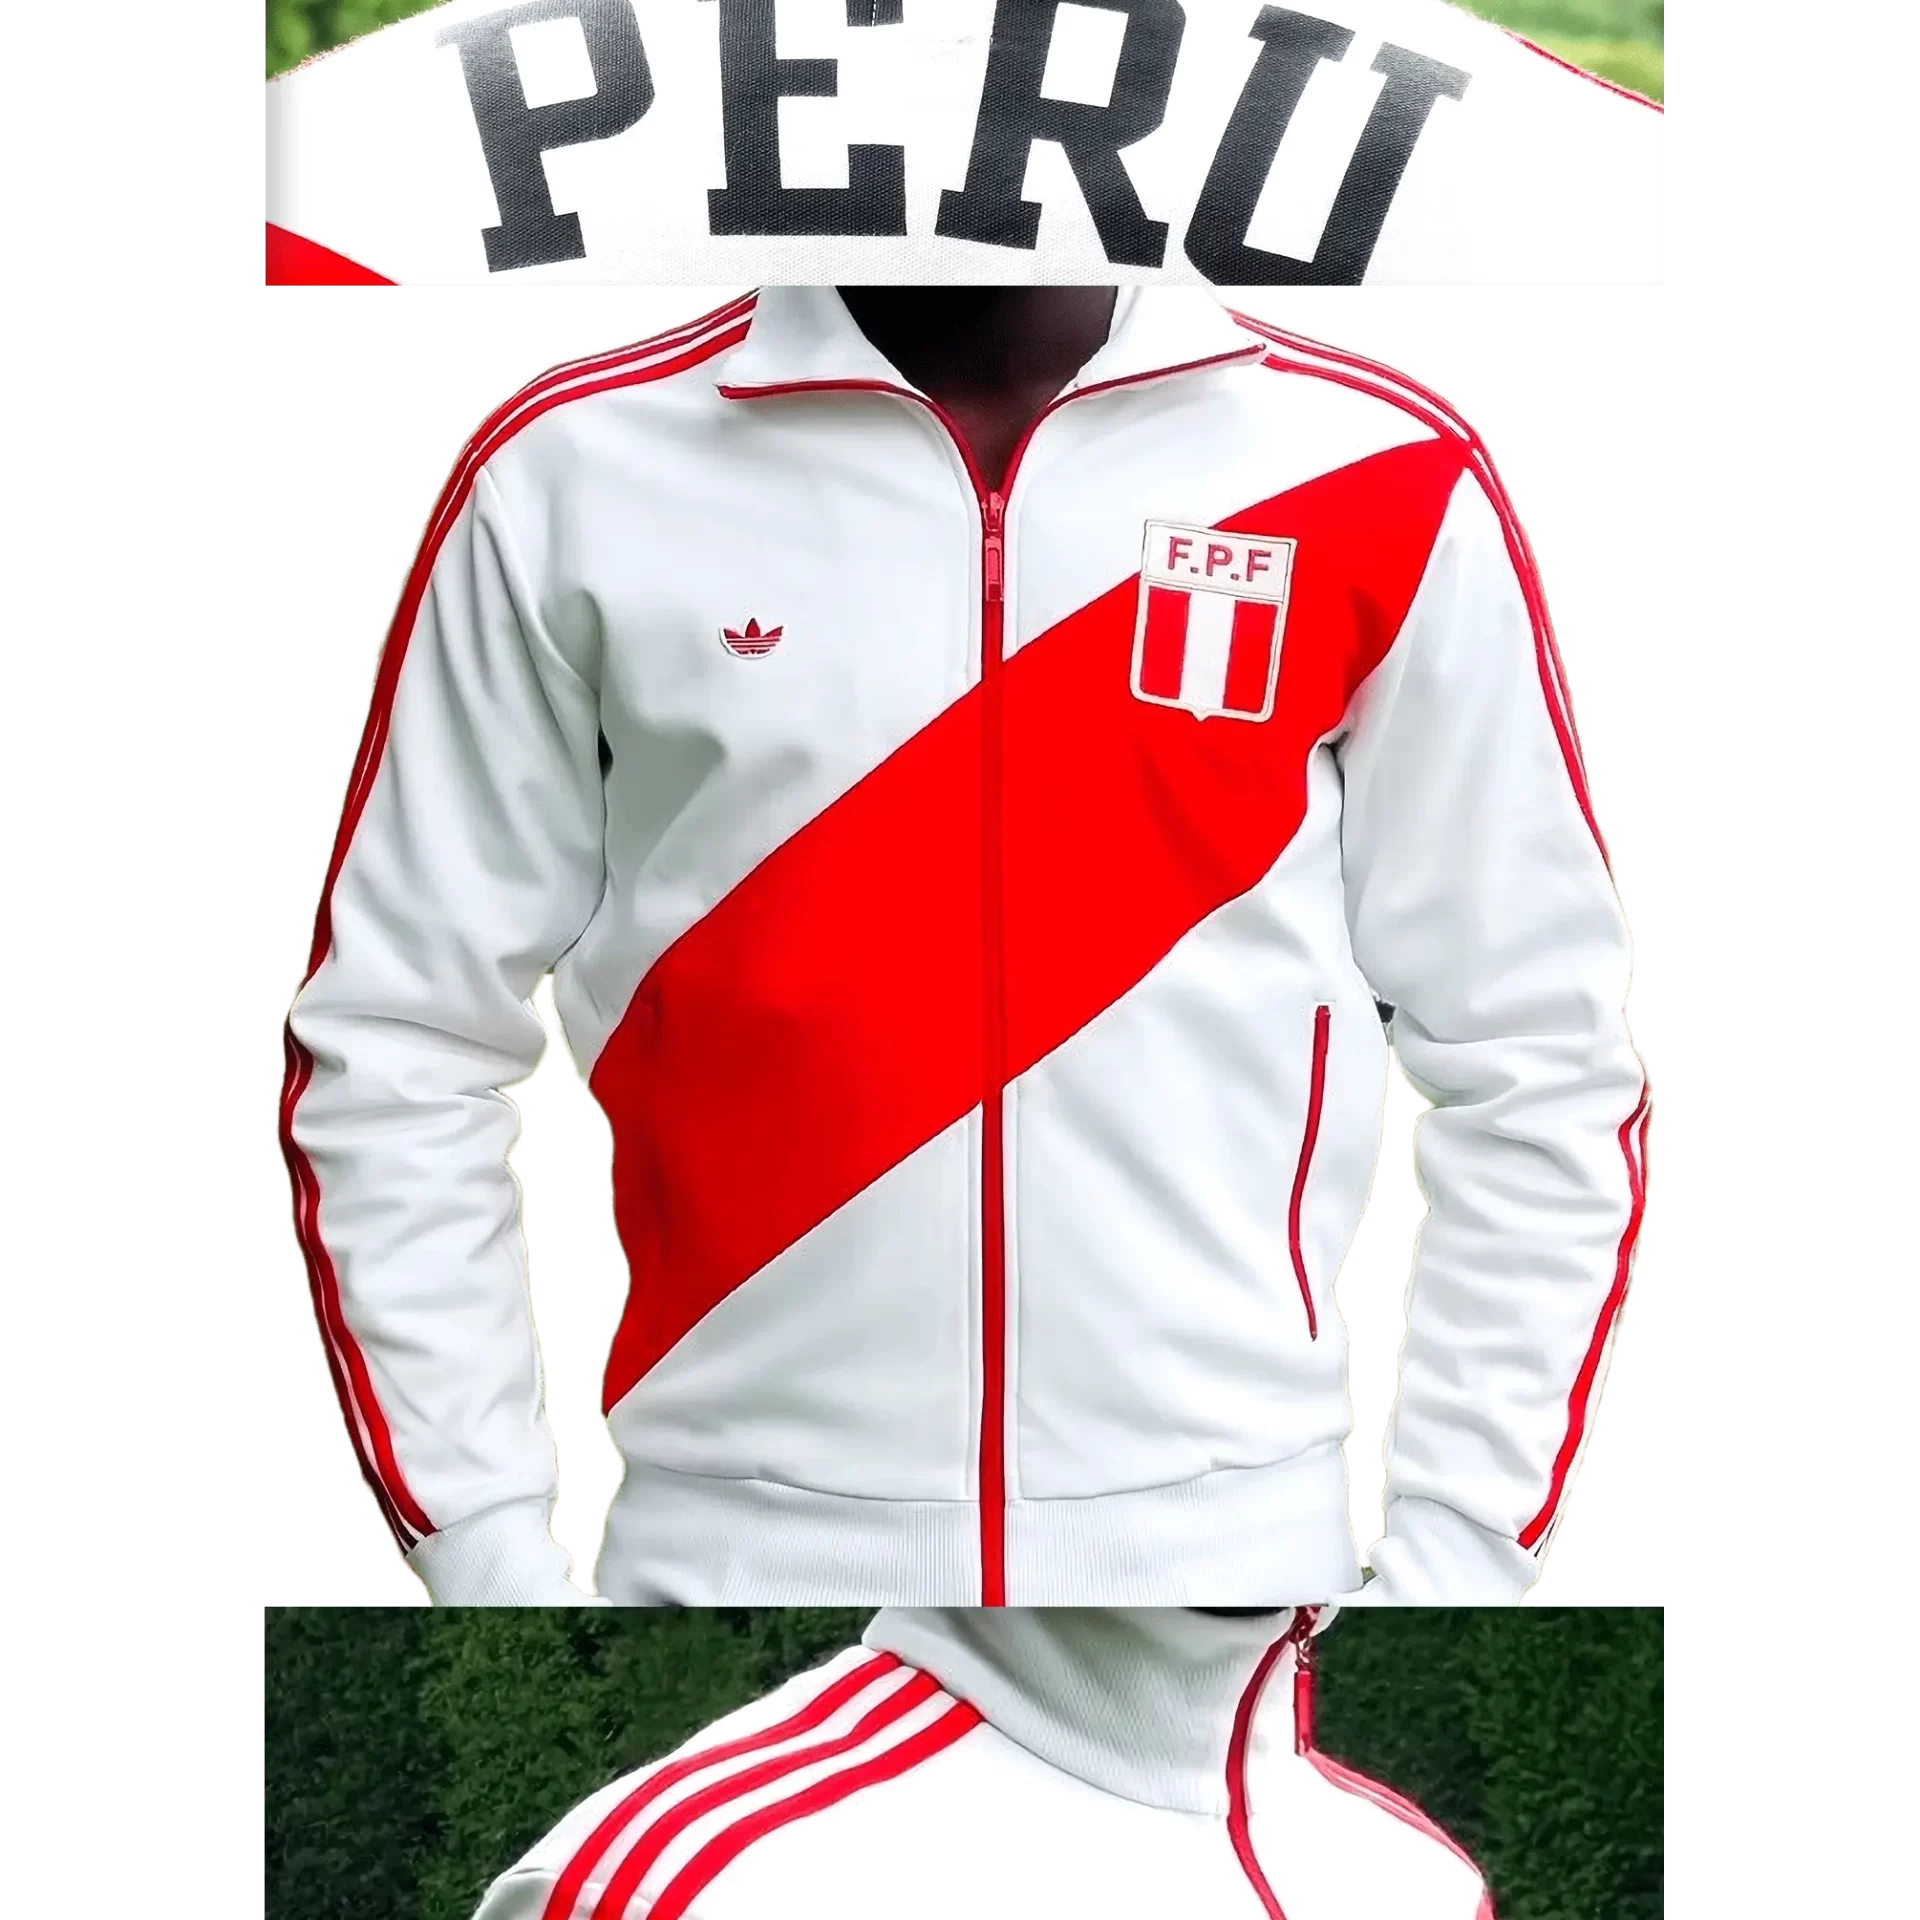 Men's 2005 Peru '78 Cubillas TT by Adidas Originals: Definitely (EnLawded.com file #lmchk56397ip2y123342kg9st)